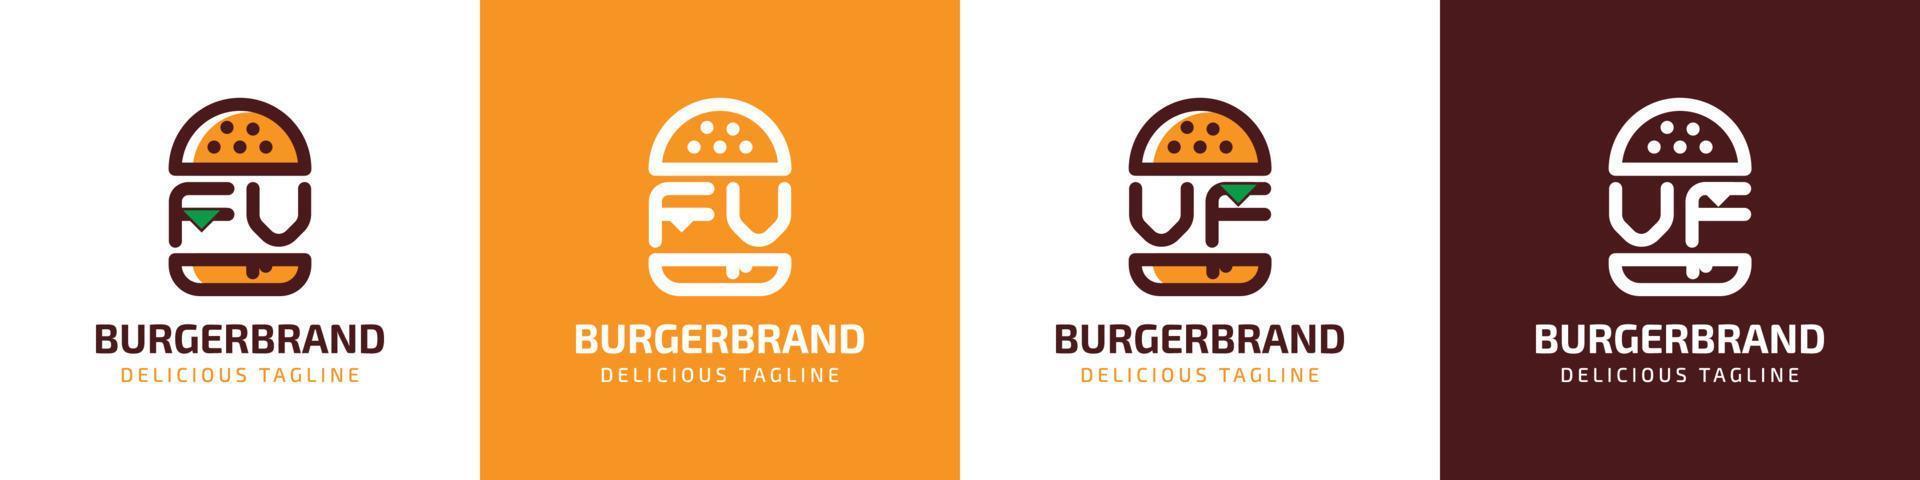 lettera fv e vf hamburger logo, adatto per qualunque attività commerciale relazionato per hamburger con fv o vf iniziali. vettore